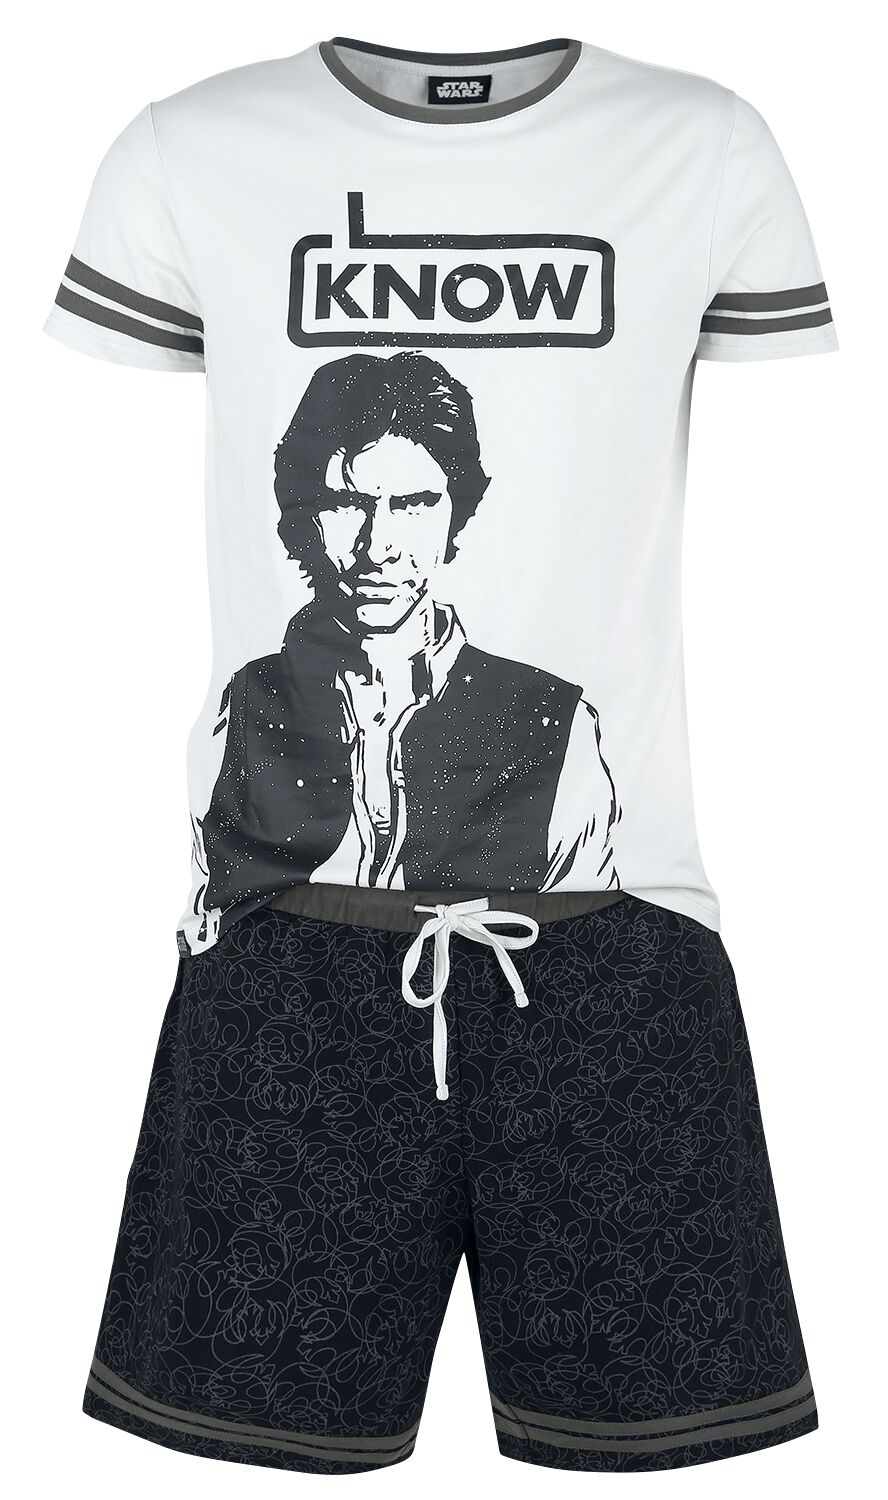 Star Wars Schlafanzug - Han Solo - I Know - S bis XXL - für Männer - Größe L - grau/schwarz  - EMP exklusives Merchandise!